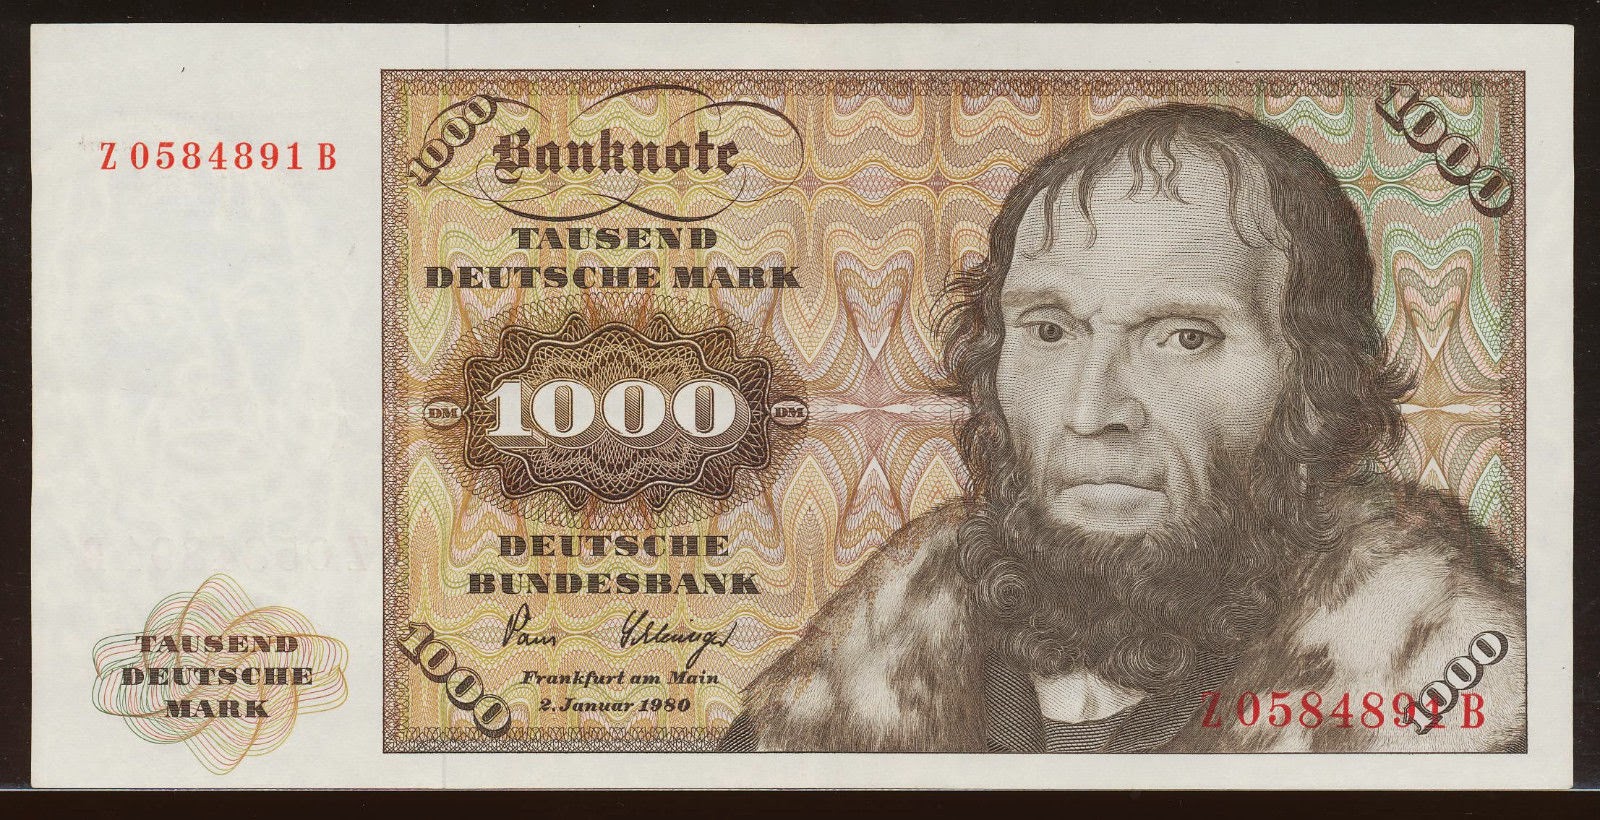 Germany 1000 Deutsche Mark banknote 1980|World Banknotes ...